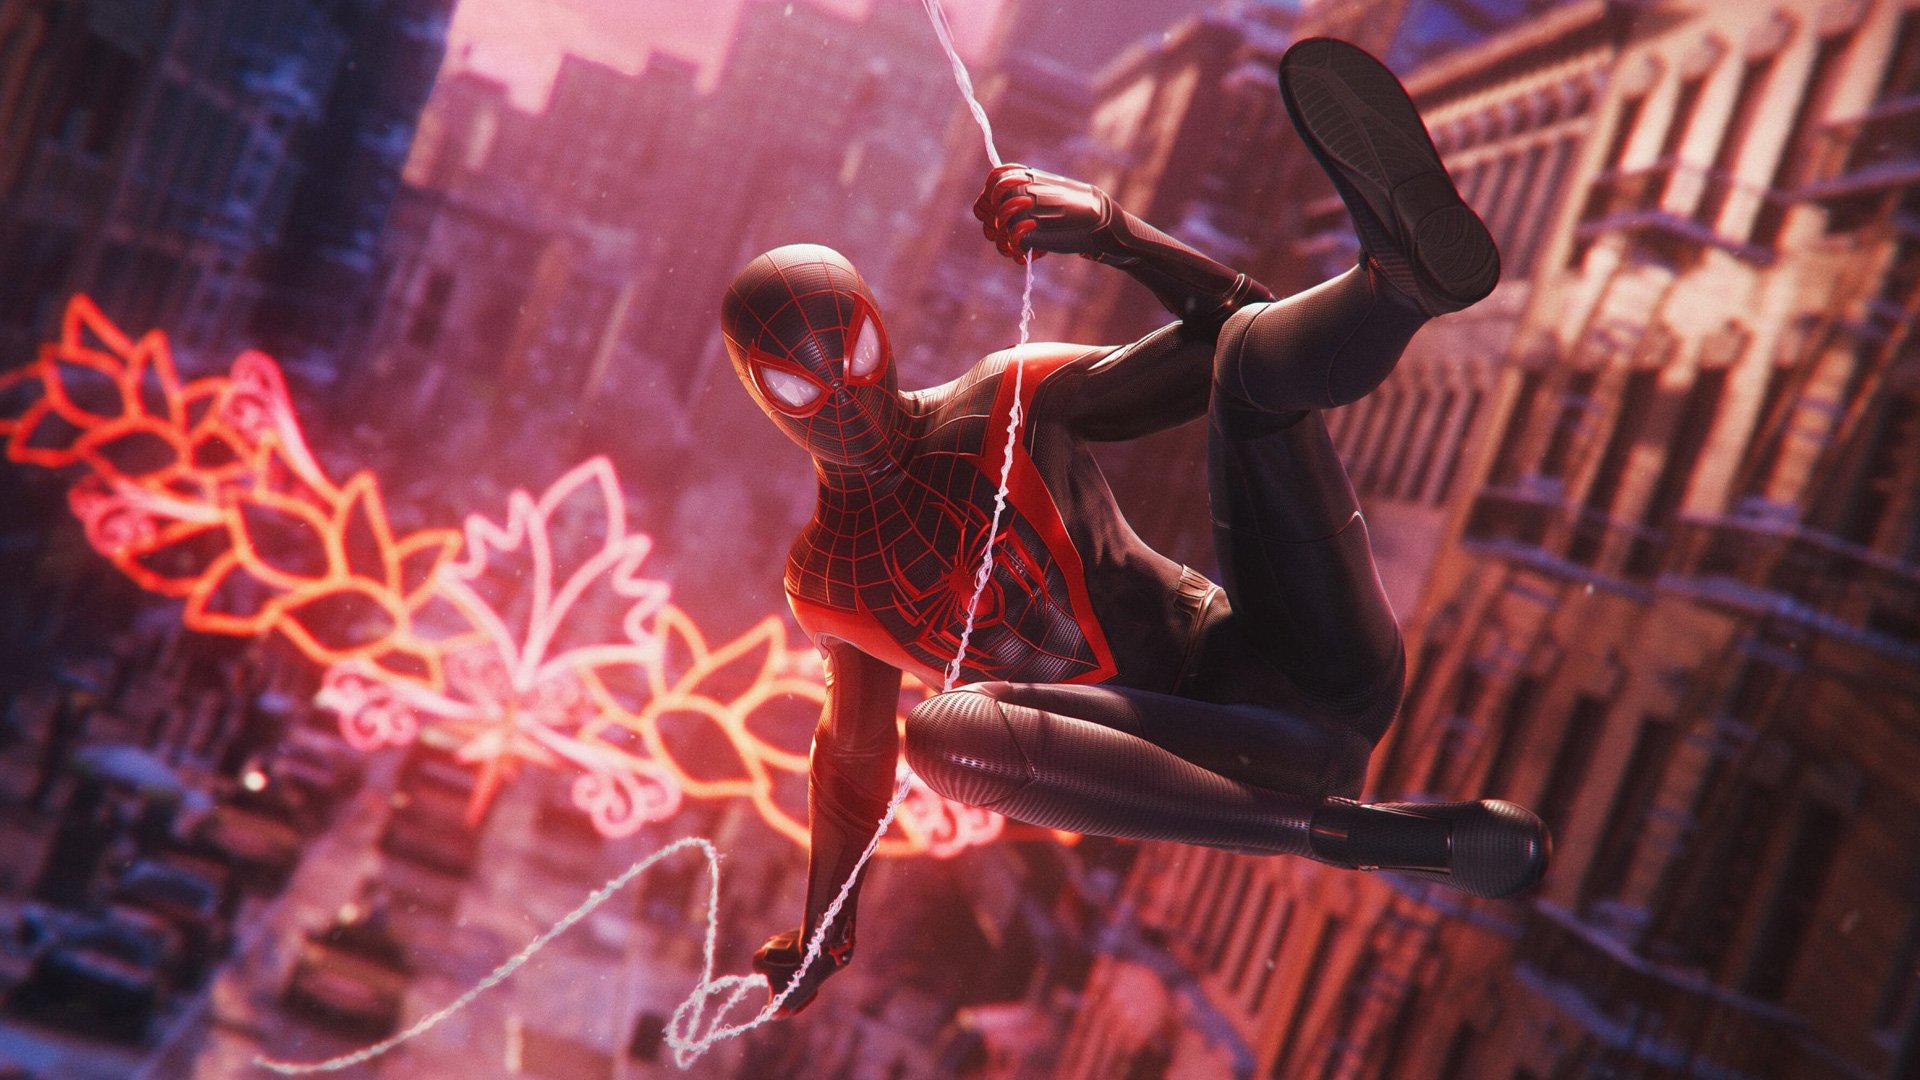 Spider-Man: Miles Morales memainkan karakter murid atau penerus dari Peter Parker